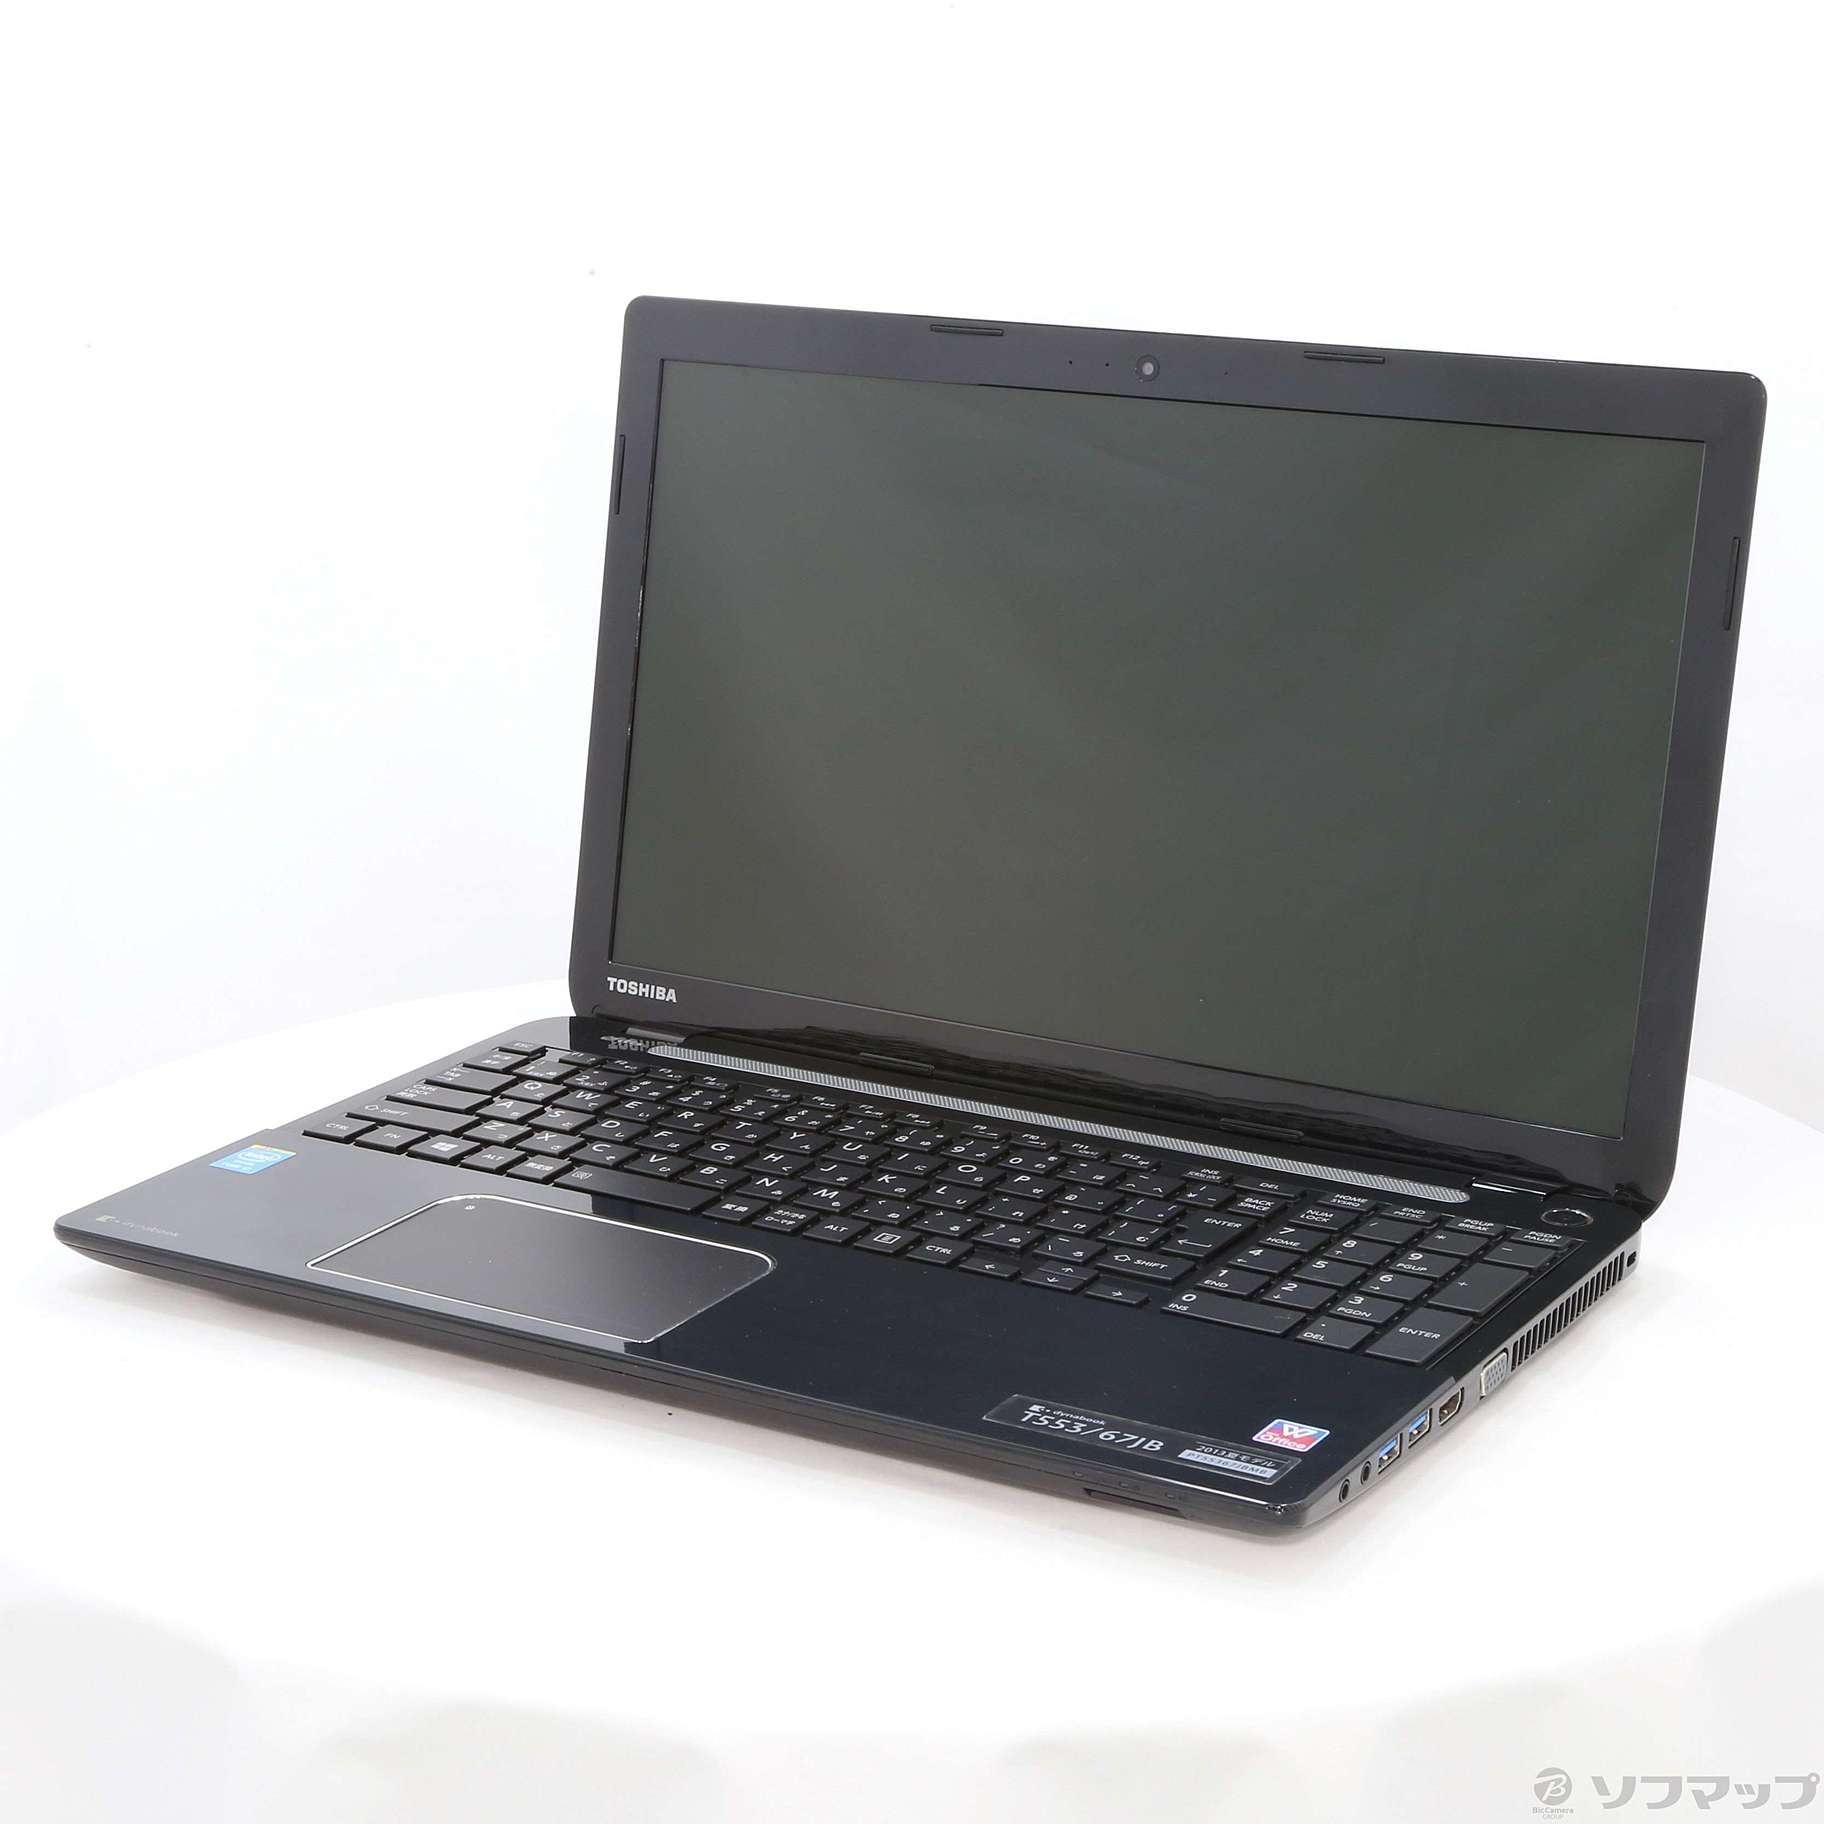 Toshiba Dynabook T553/67JB i7-4700MQ